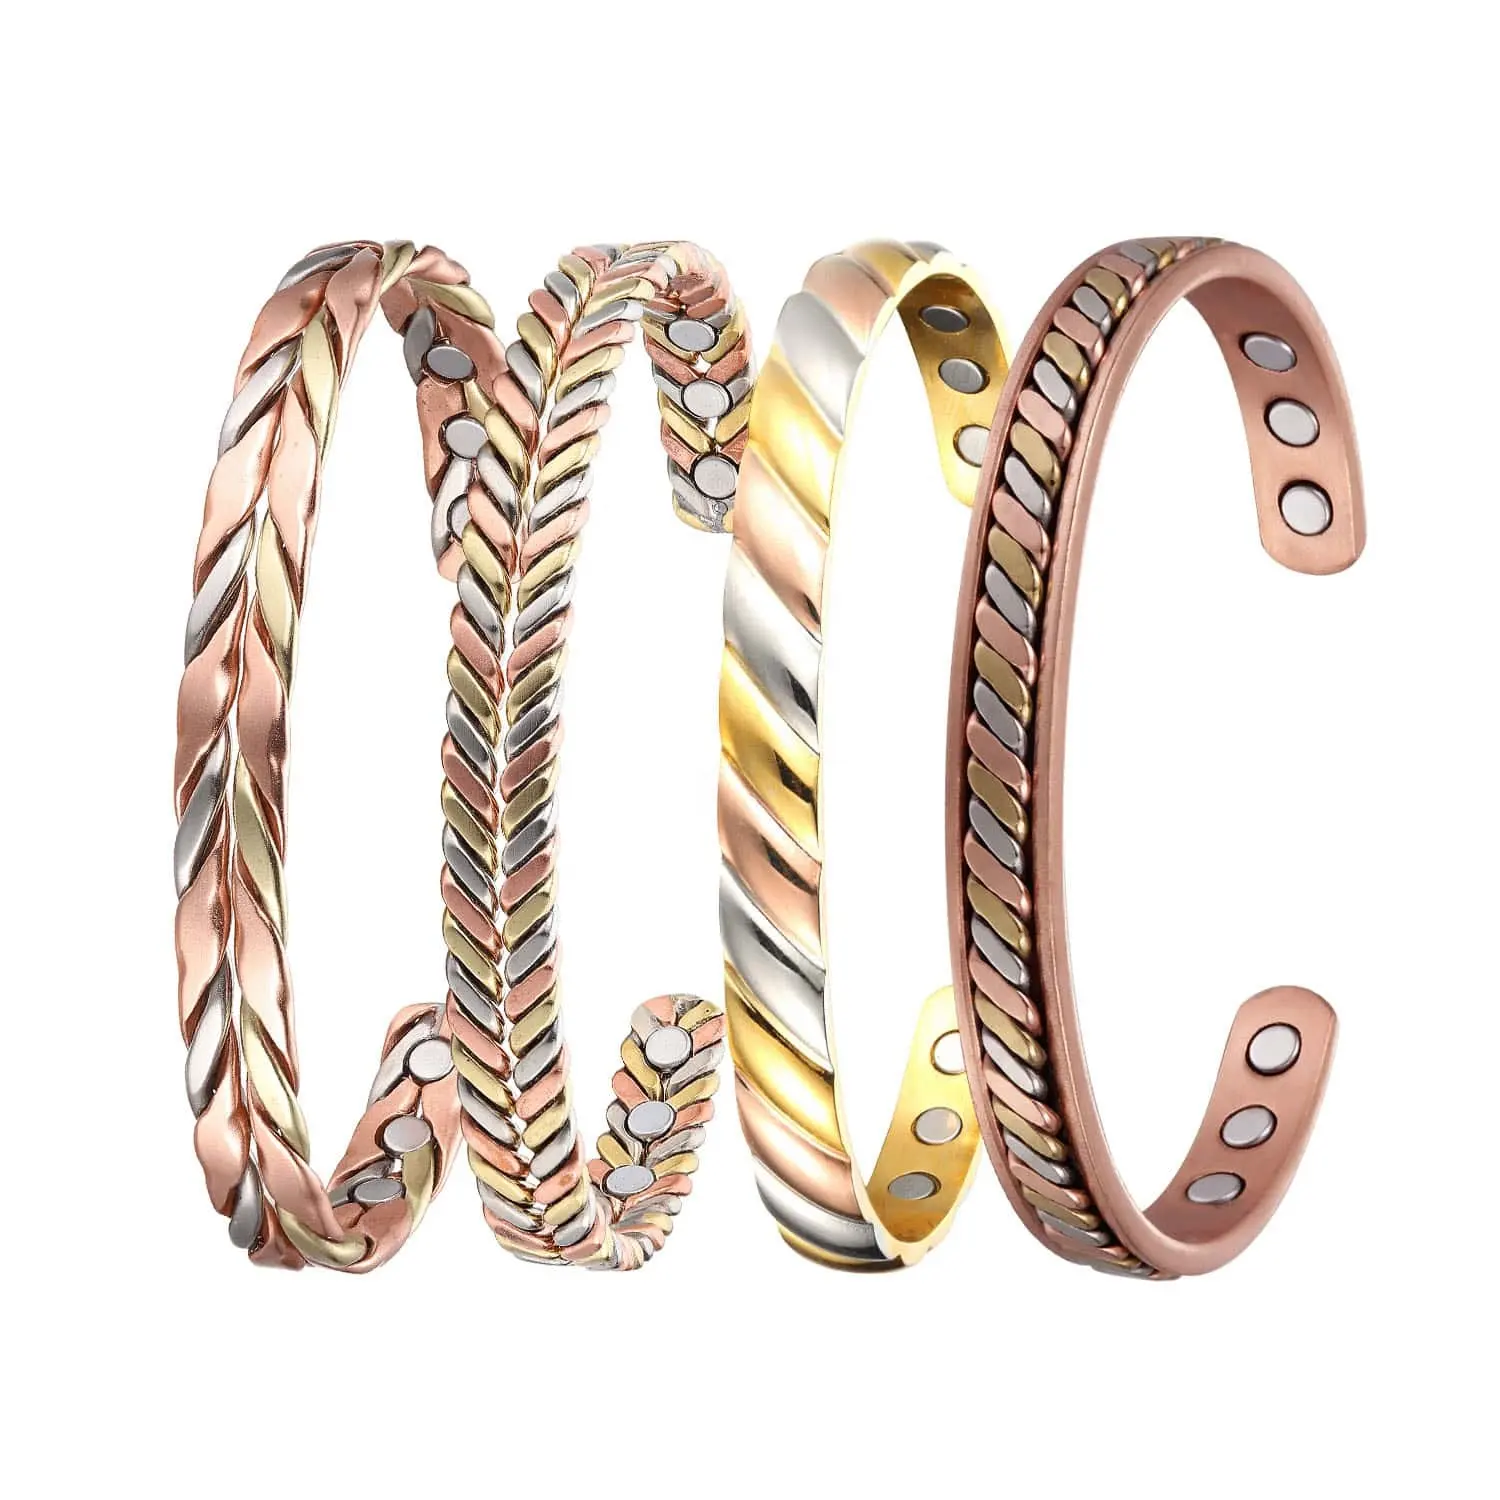 Pulseiras de fio de cobre minimalistas ajustáveis para mulheres, trança artesanal de cobre puro 99,99%